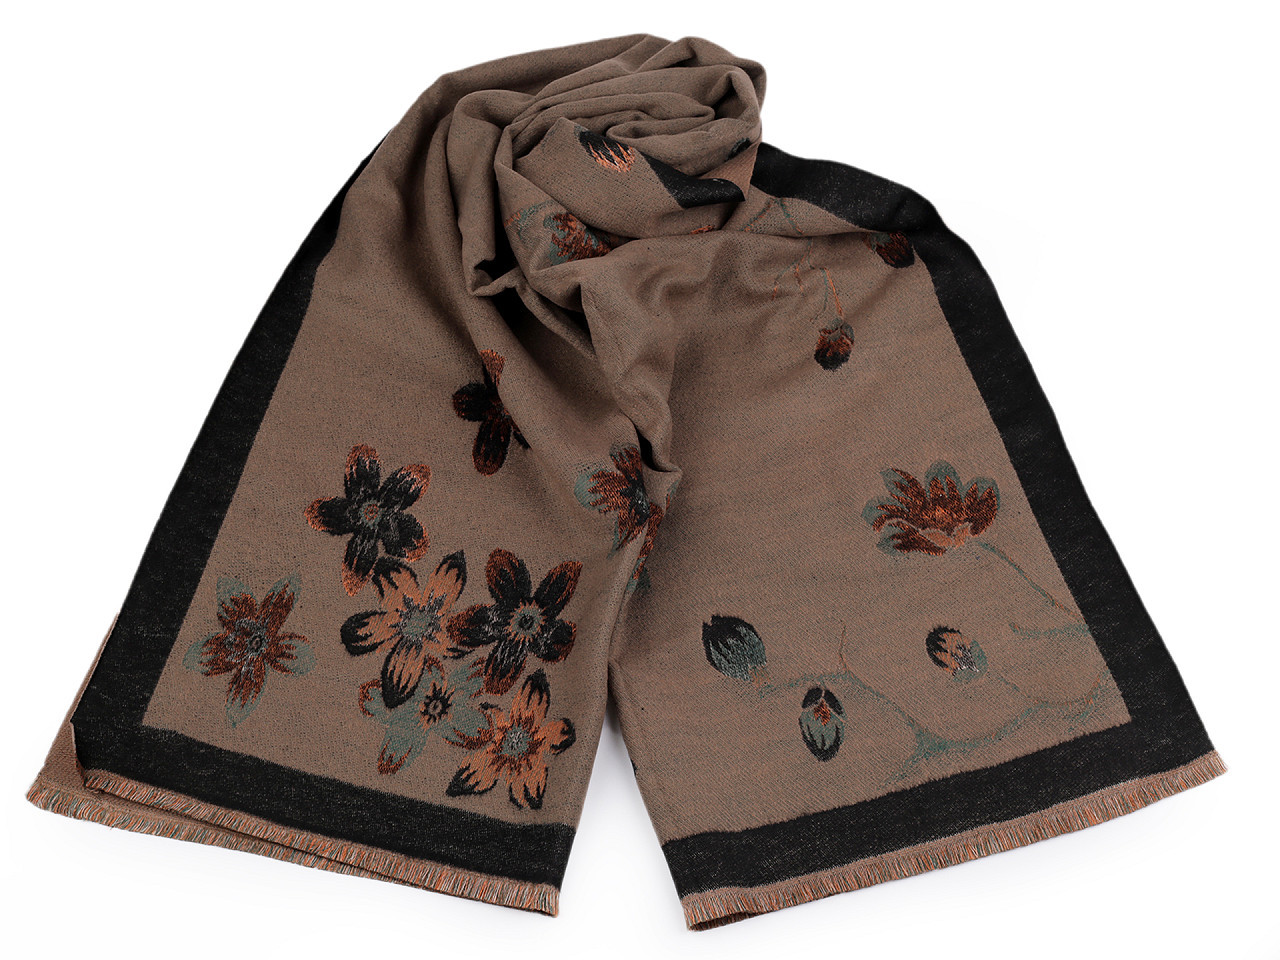 Šátek / šála typu kašmír s třásněmi, květy 65x190 cm, barva 6 béžová hnědá tmavá